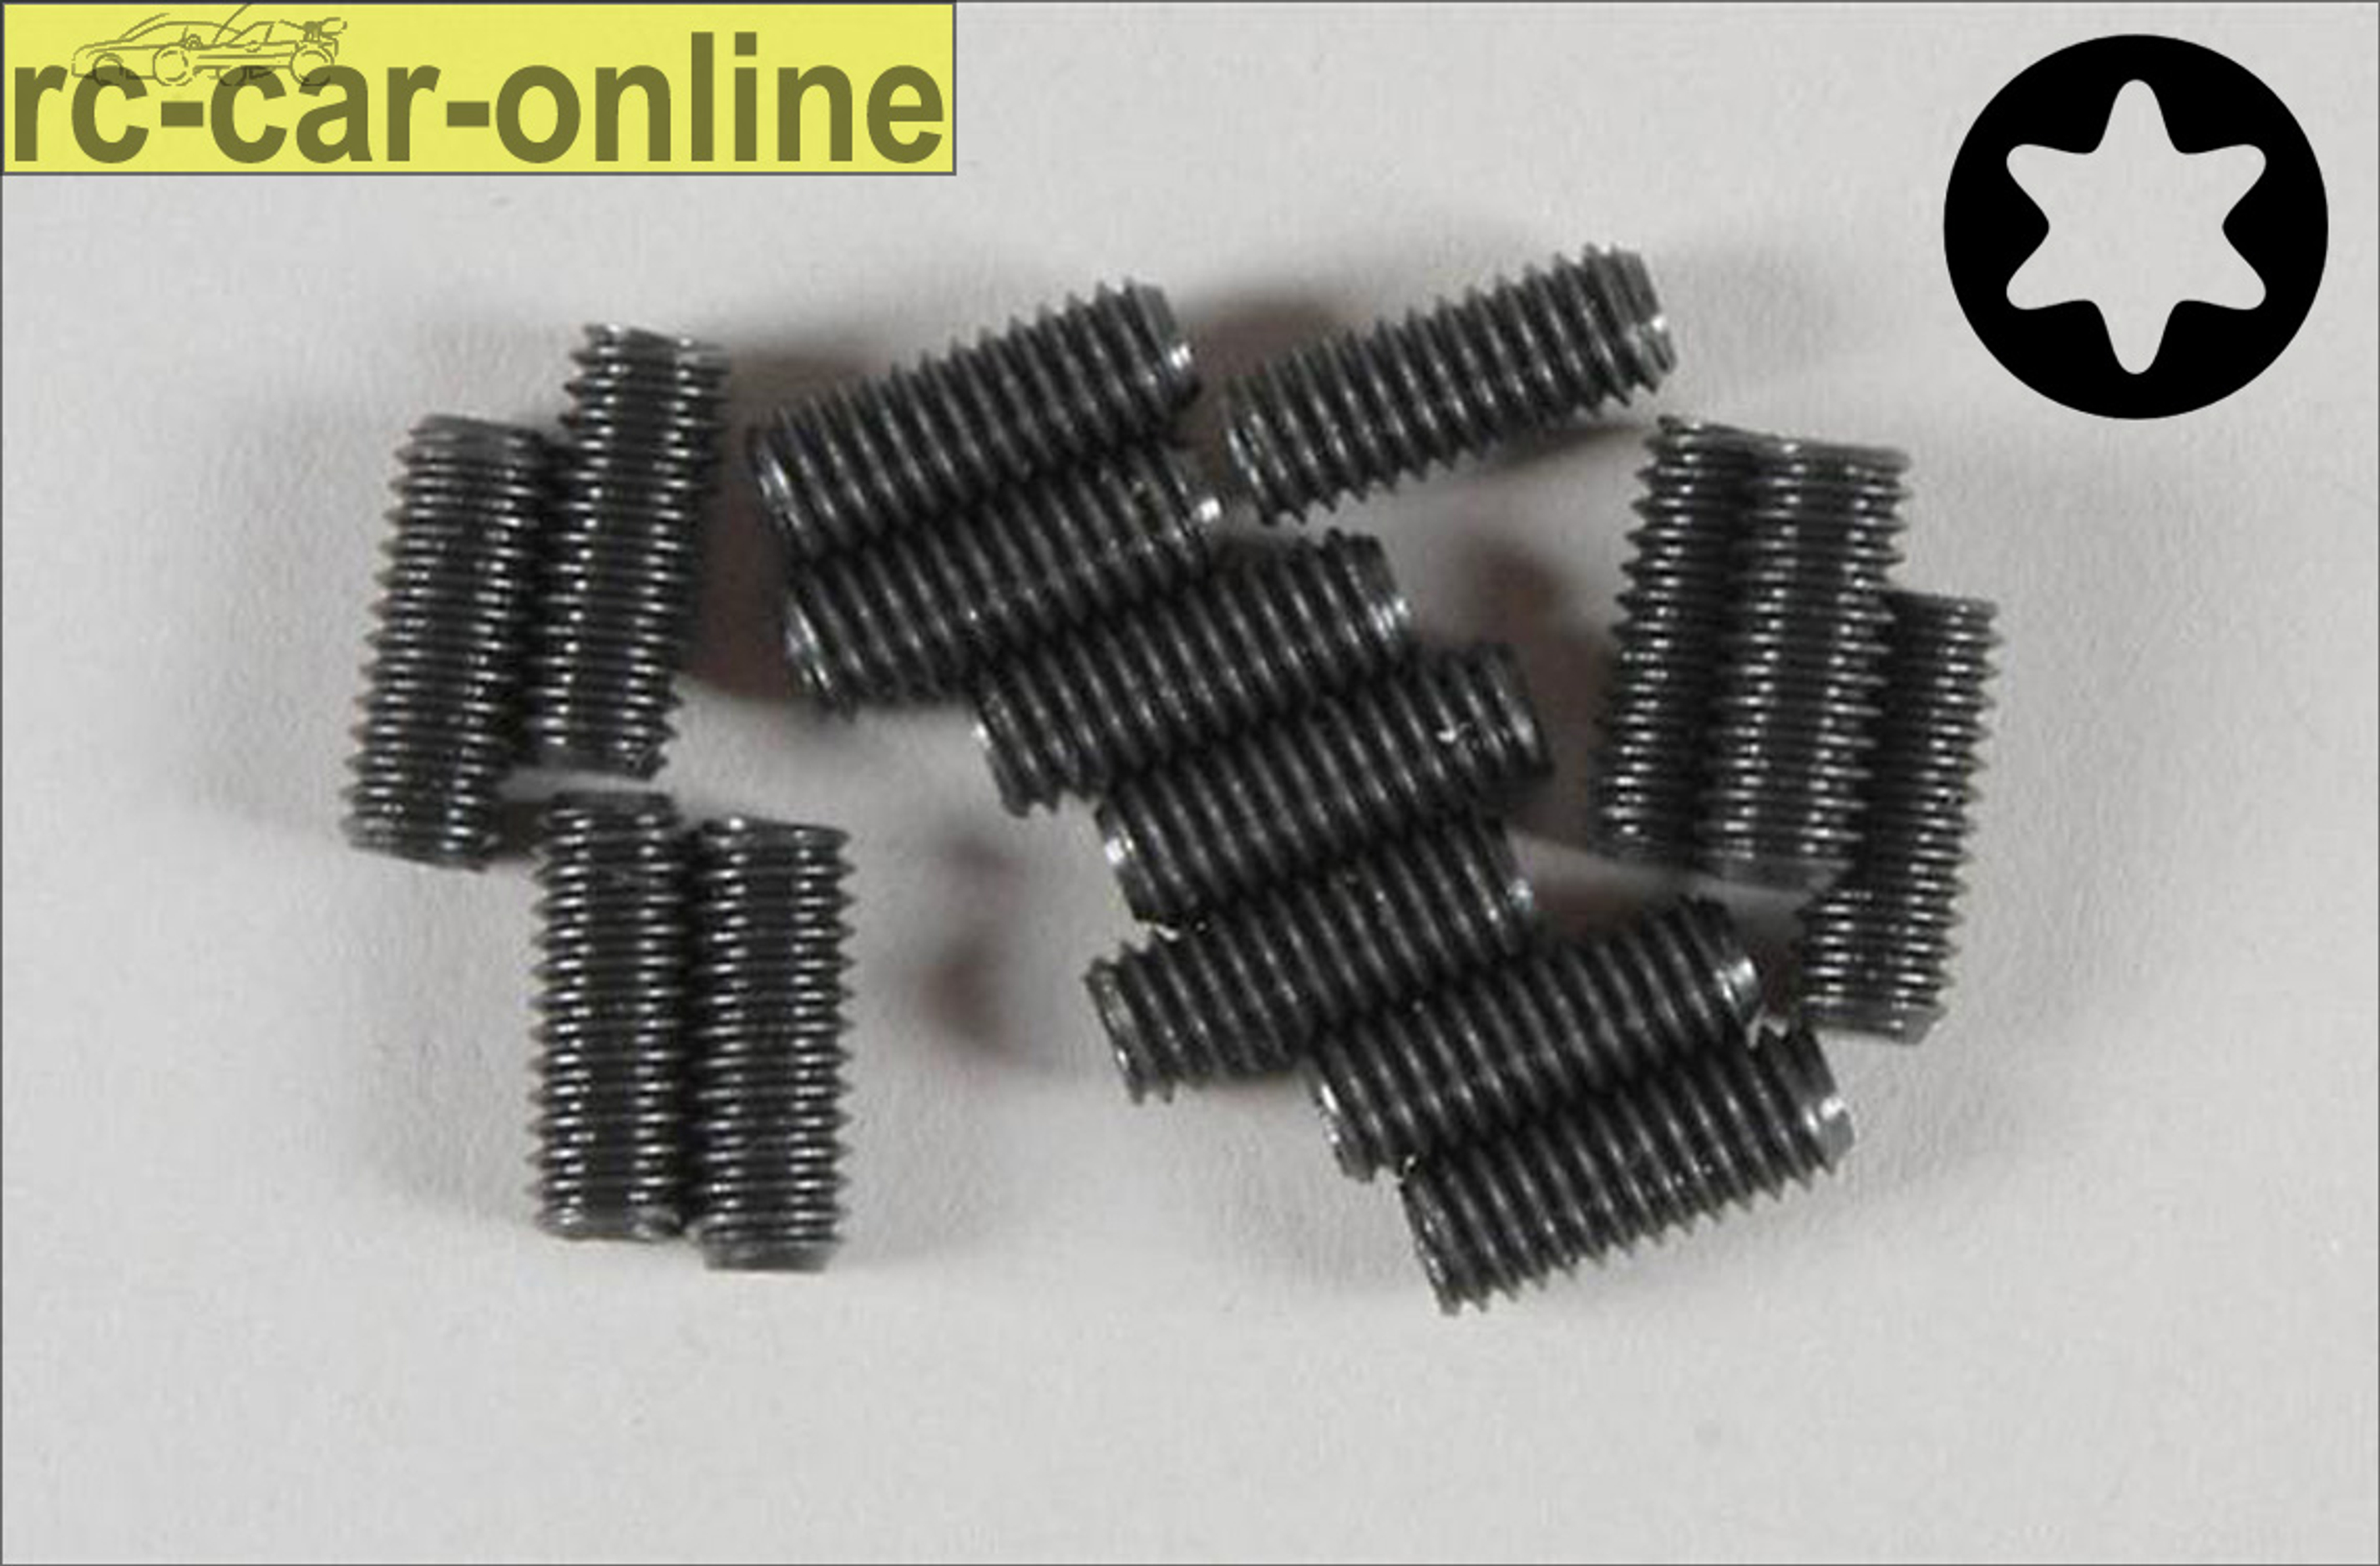 6929/10 FG Grub screw with Torx M4x10 mm, 15 pieces